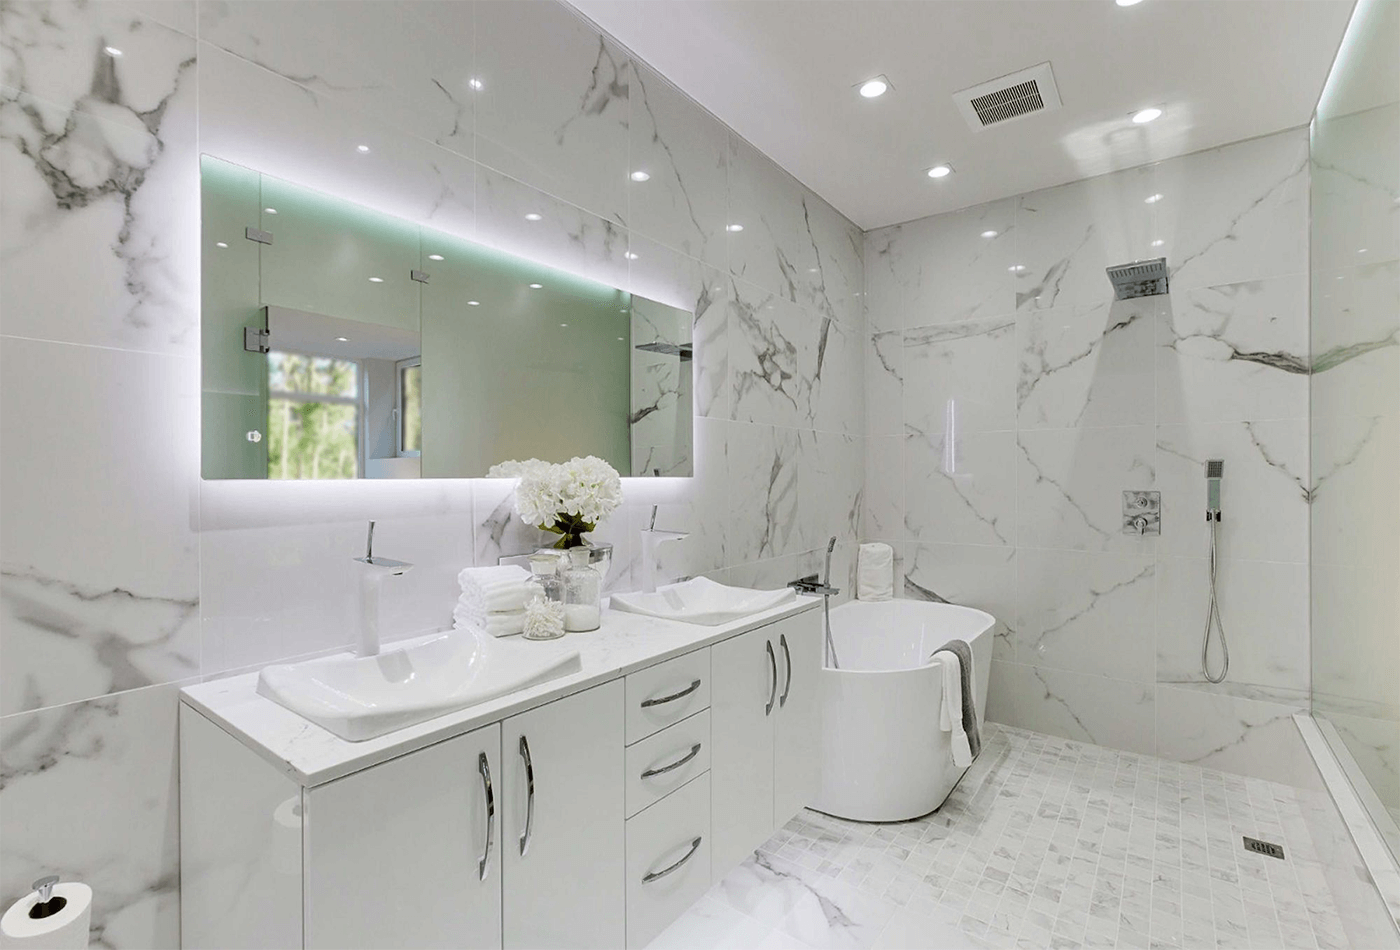 Bathroom Ceiling Ideas - Home & Texture